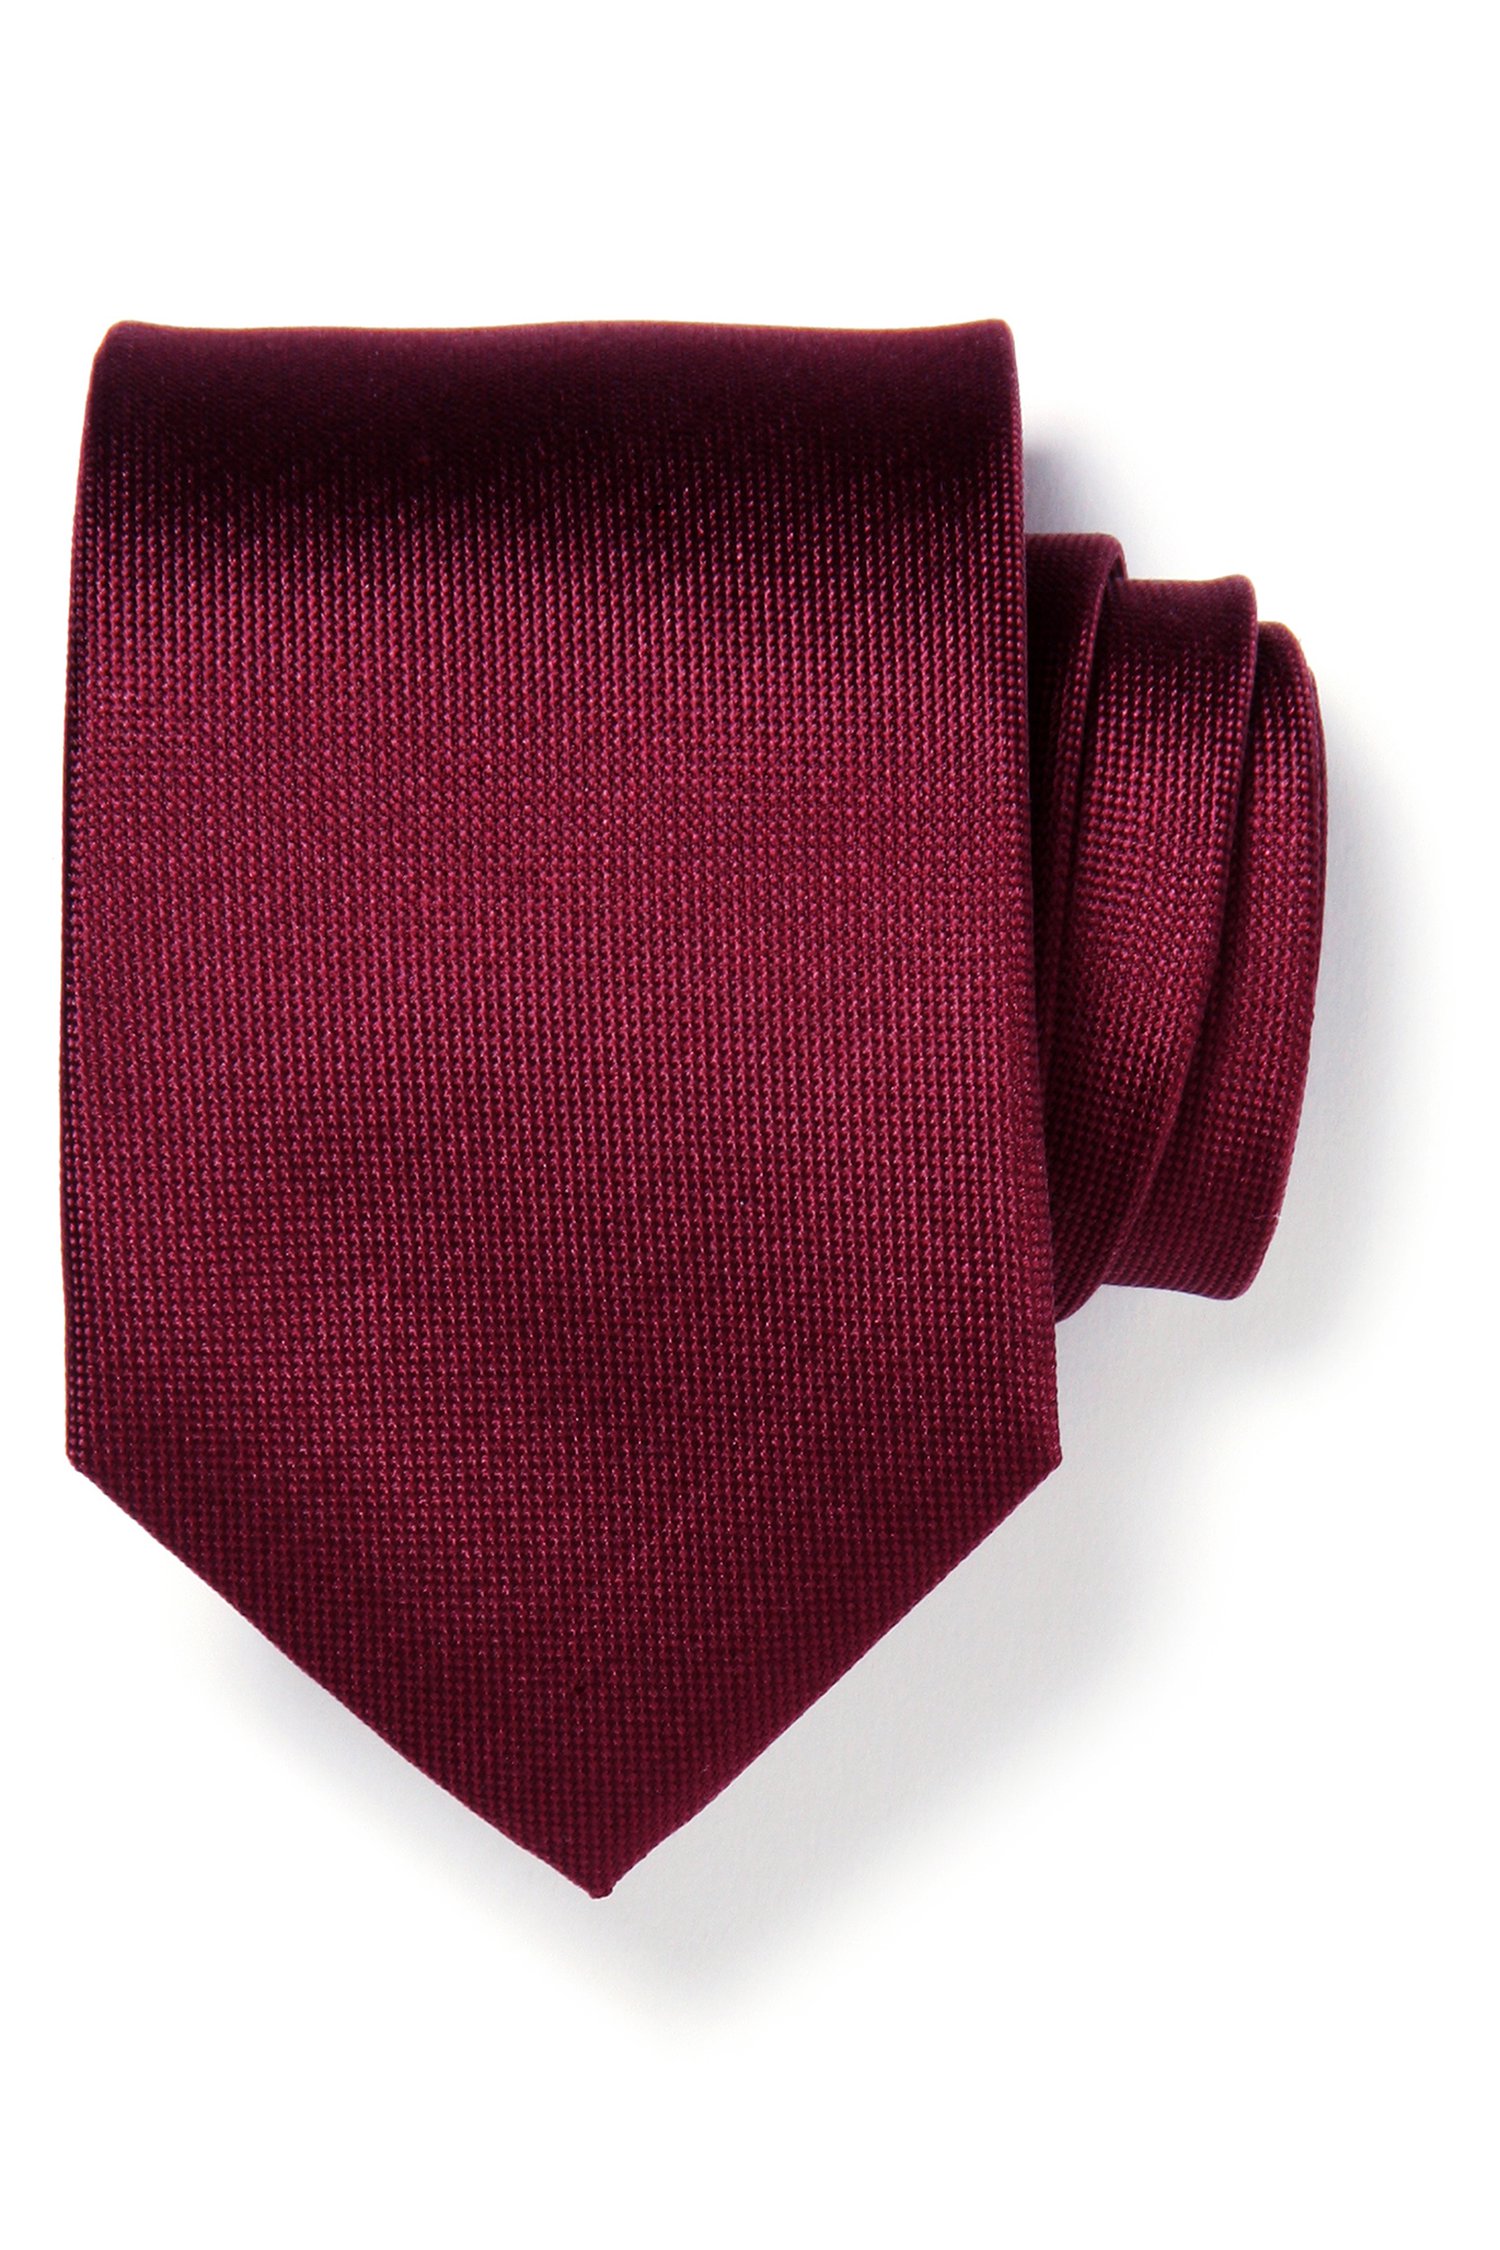 Cravate bordeaux en soie de Michaelis pour Hommes